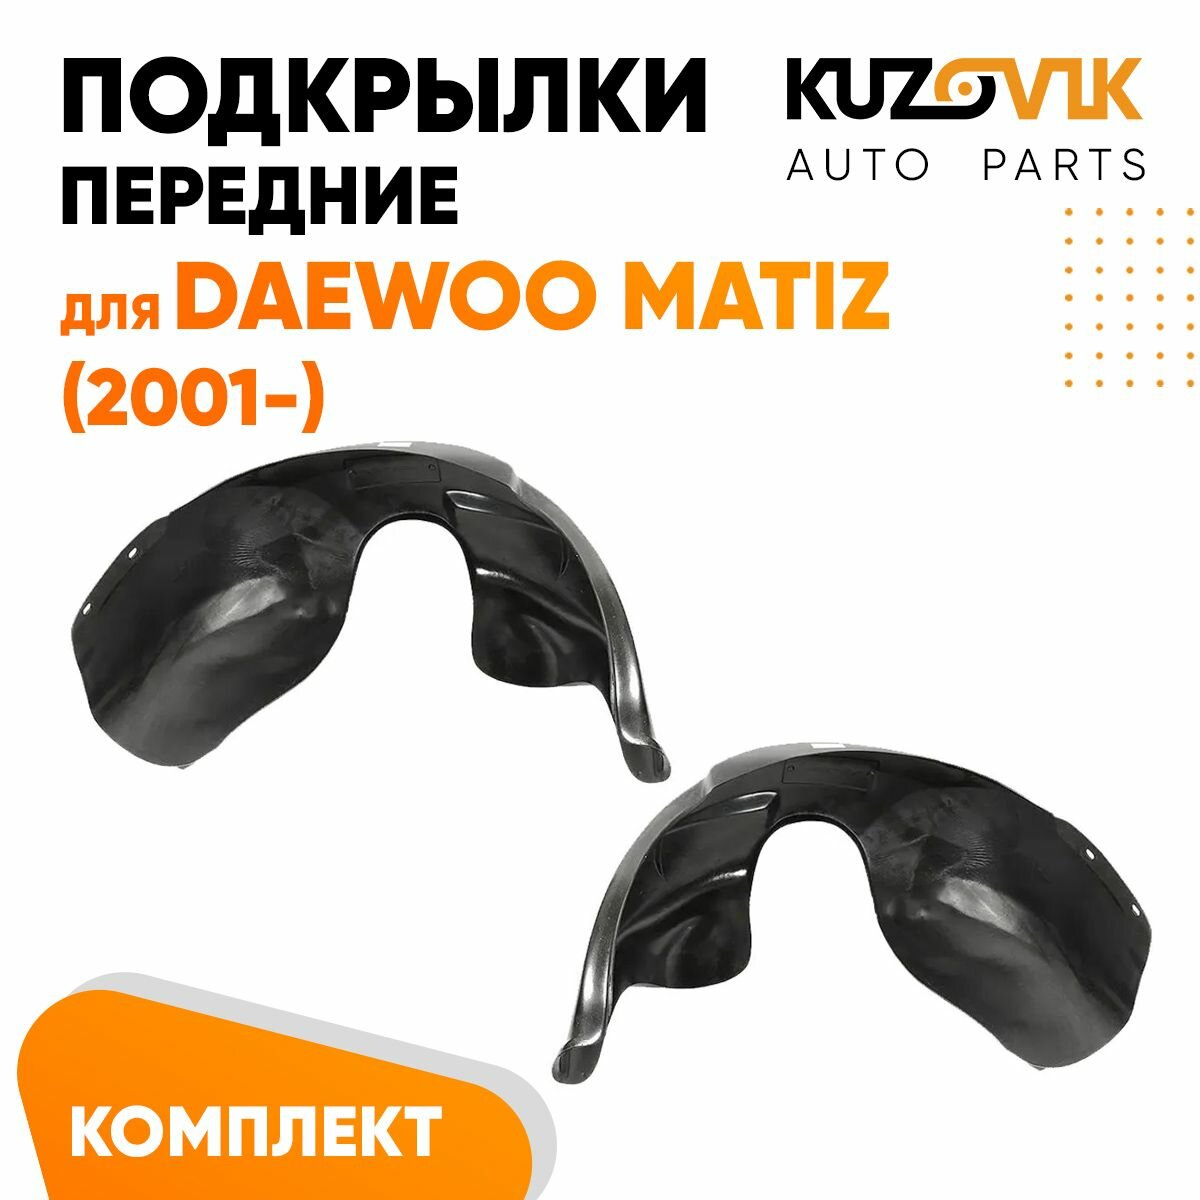 Подкрылки передние Daewoo Matiz (2001-)